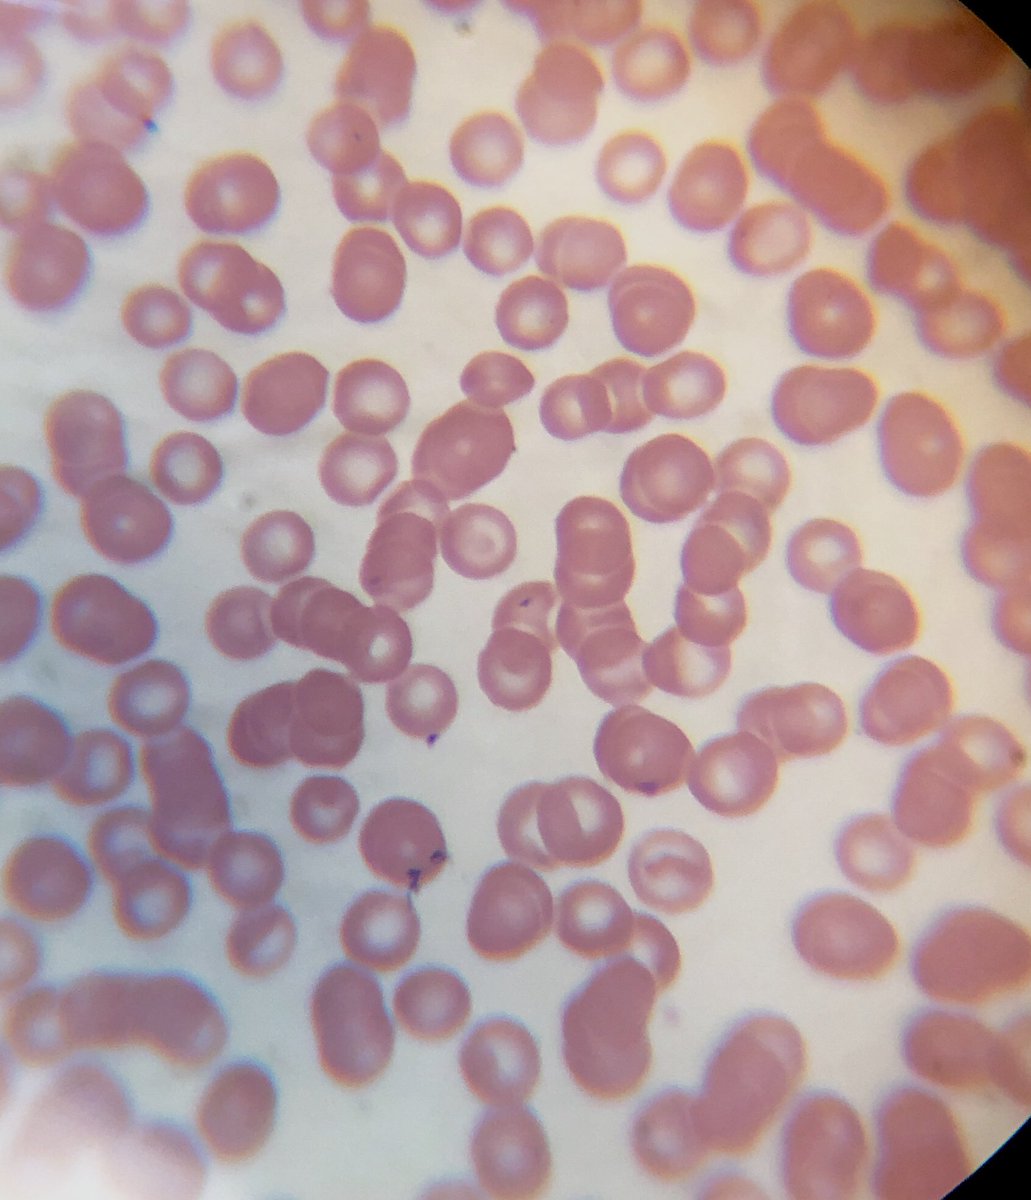 Yo ocupo la tincion de May-Grünwald Giemsa para buscar hemoparasitos. Los puntos o inclusiones de color morado dentro de los glóbulos rojos/eritrocitos son hemoparasitos. Se darán cuenta que son diferentes porque siempre hay co-infecciones, es decir, dos o más parásitos.